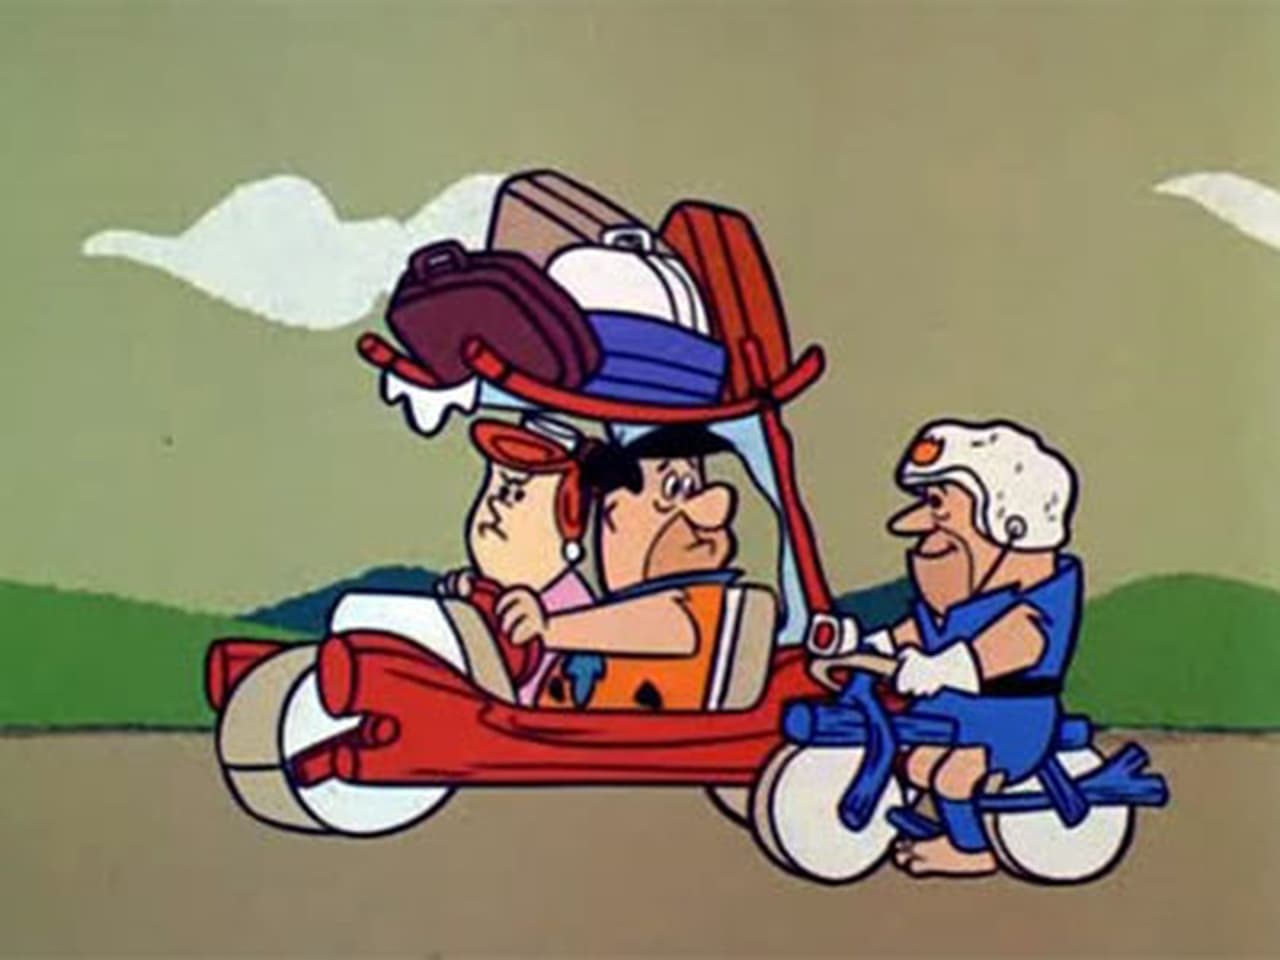 The Flintstones - Season 3 Episode 20 : Mother-In-Law's Visit